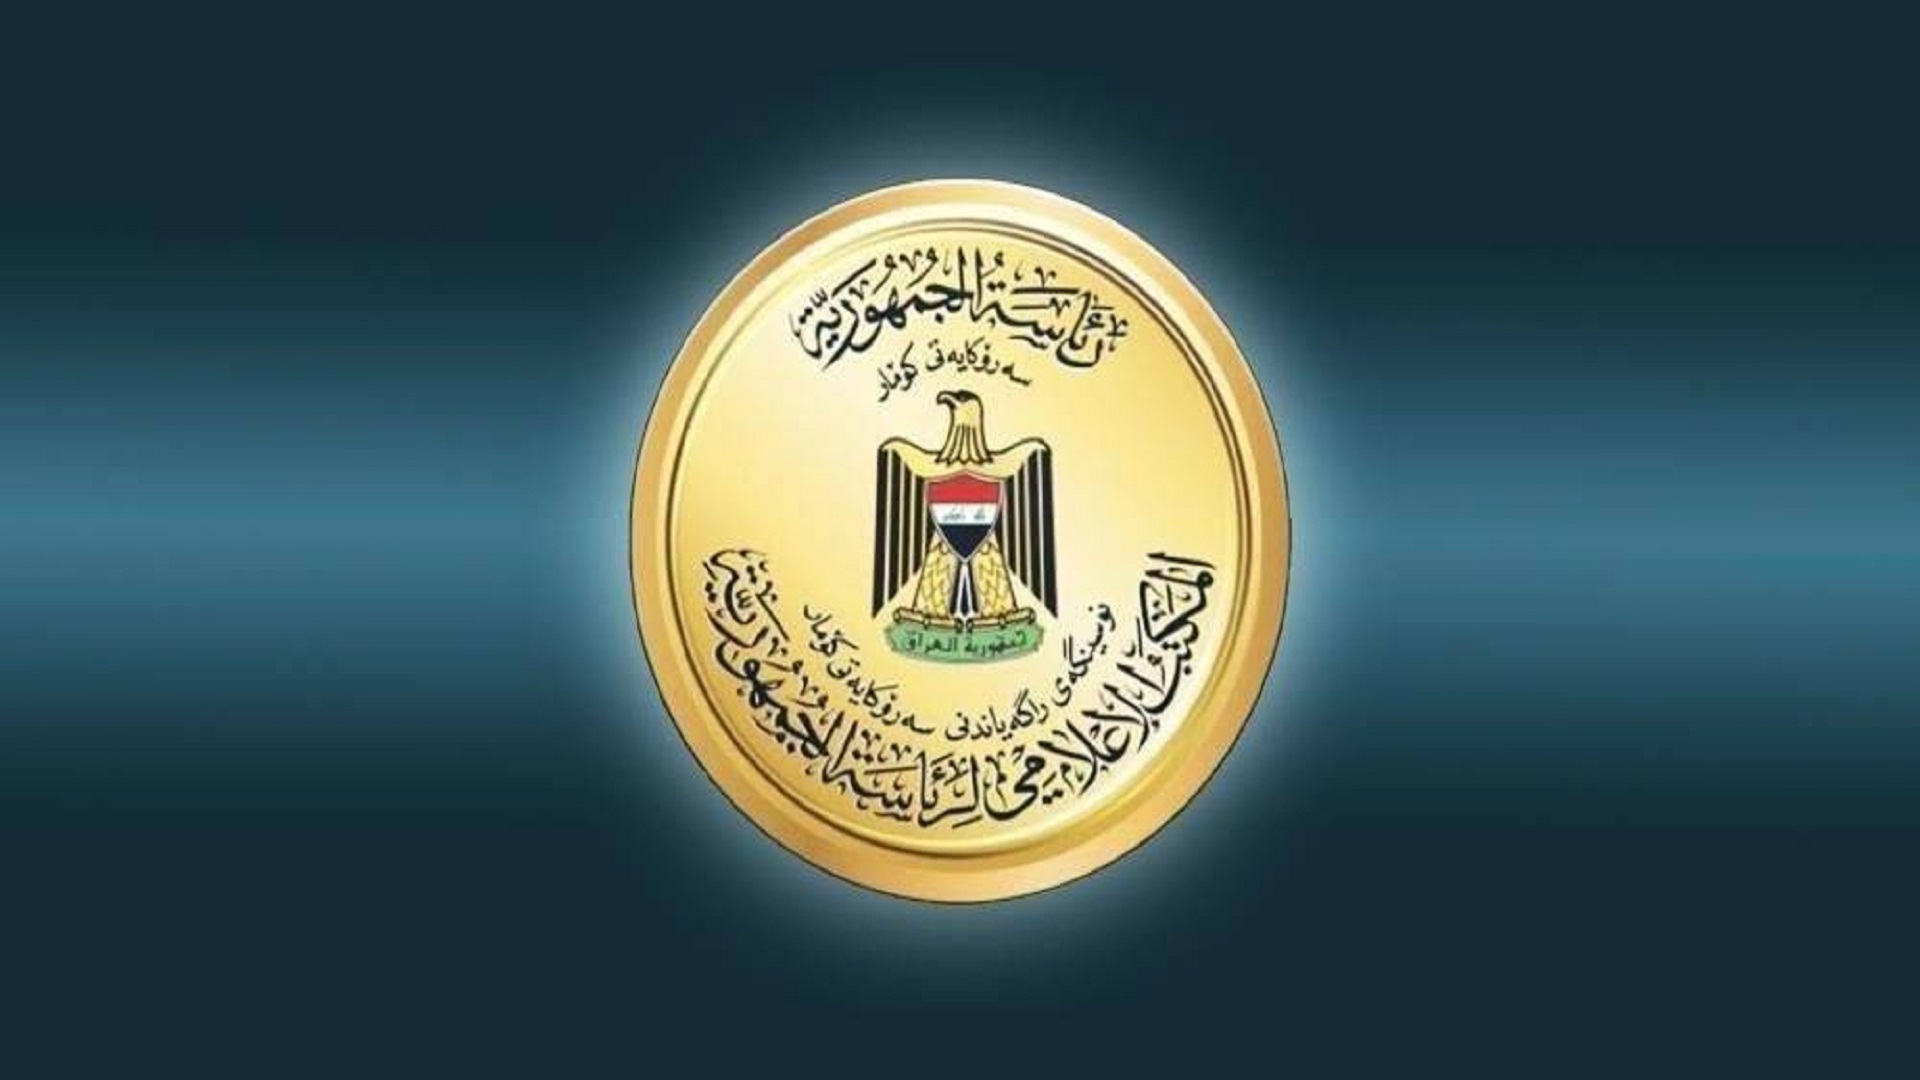  Iraqi Presidency's logo.